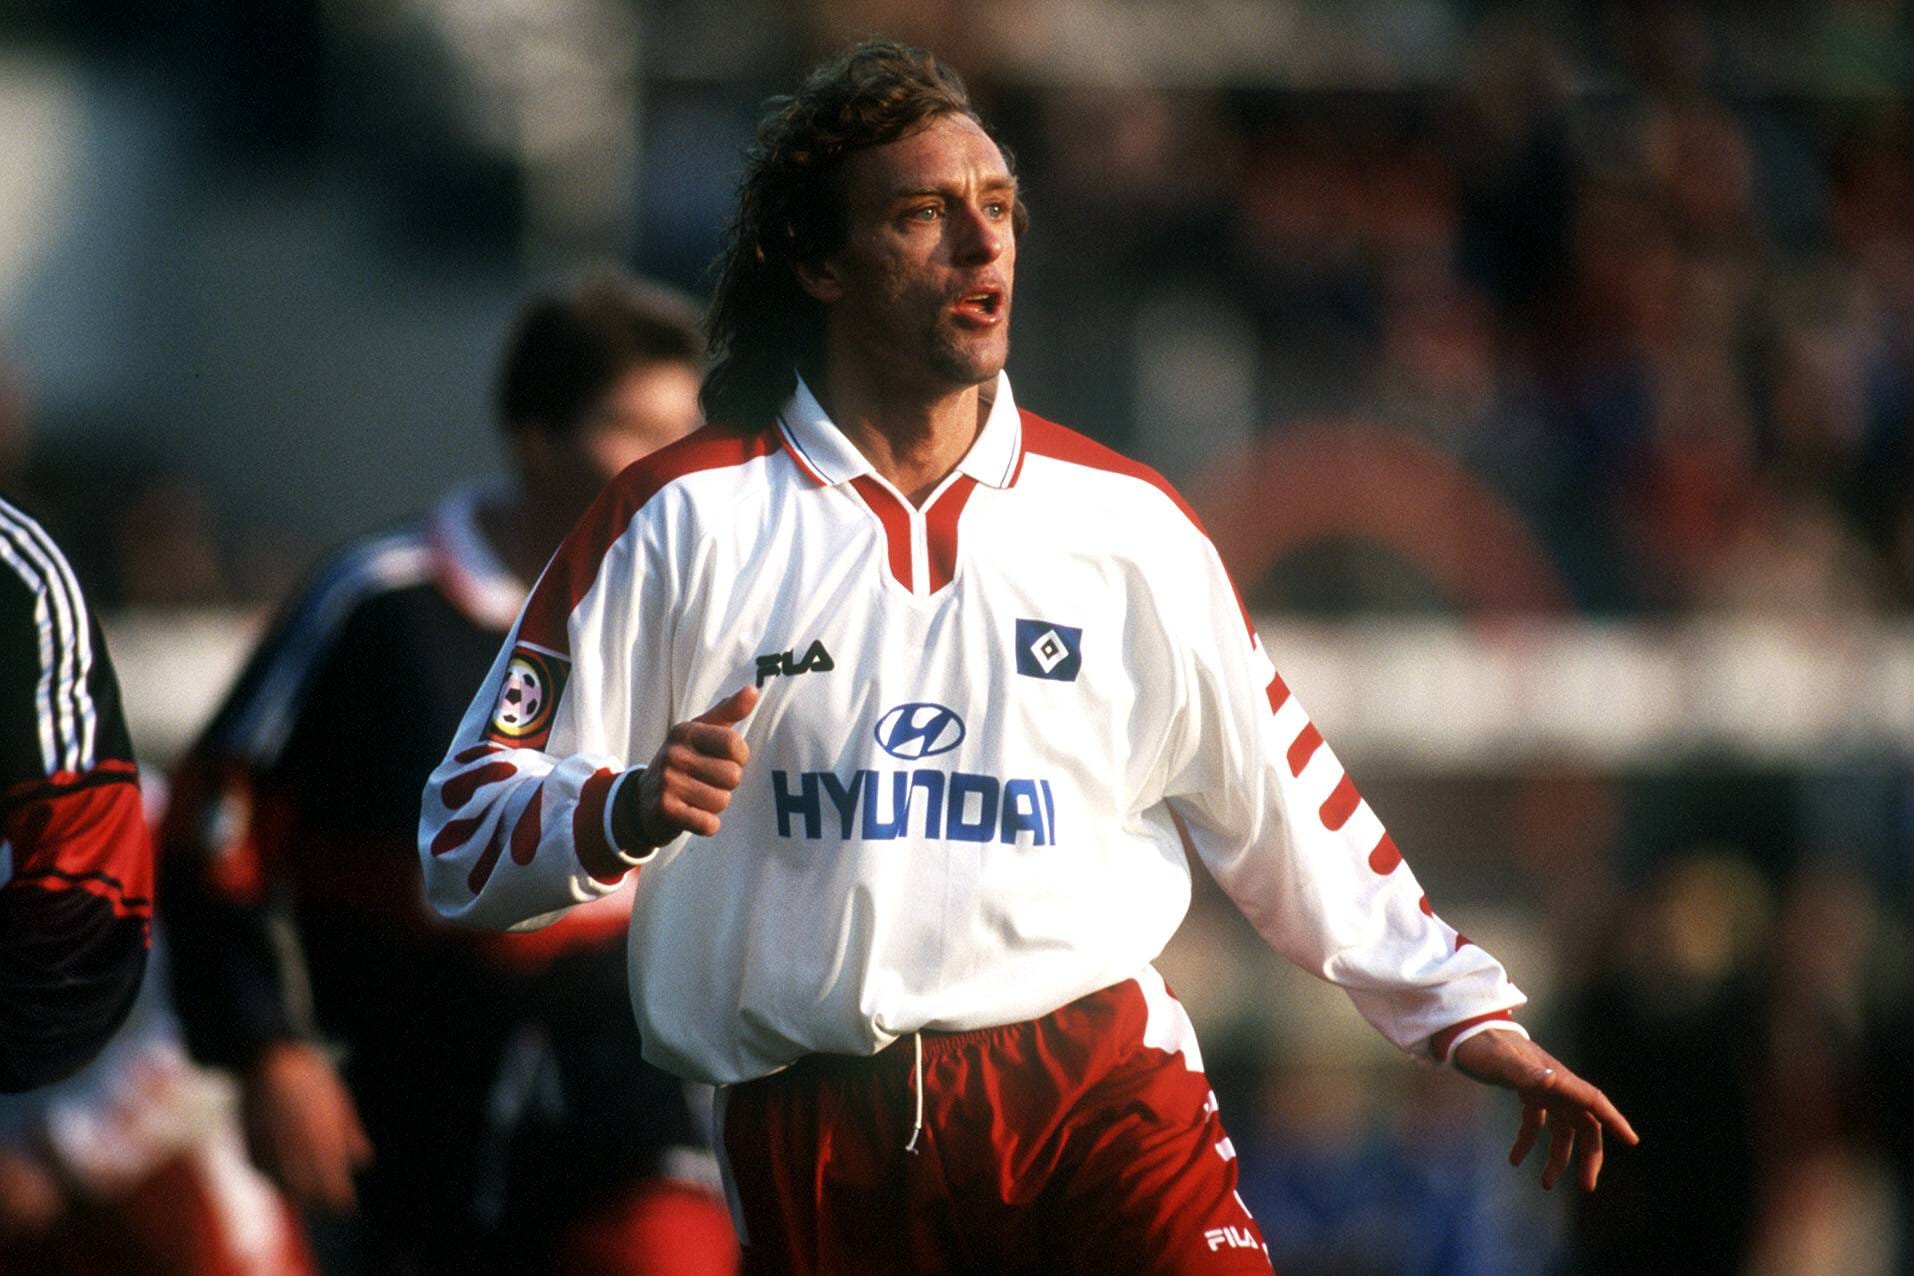 Thomas Doll (1990-1991/1998-2001): Der ehemalige Nationalspieler beendete nach insgesamt 74 Spielen für den HSV seine Fußballer-Karriere im Jahr 2001. Danach wurde er Trainer und arbeitete unter anderem in Ungarn sowie bei Hannover 96.